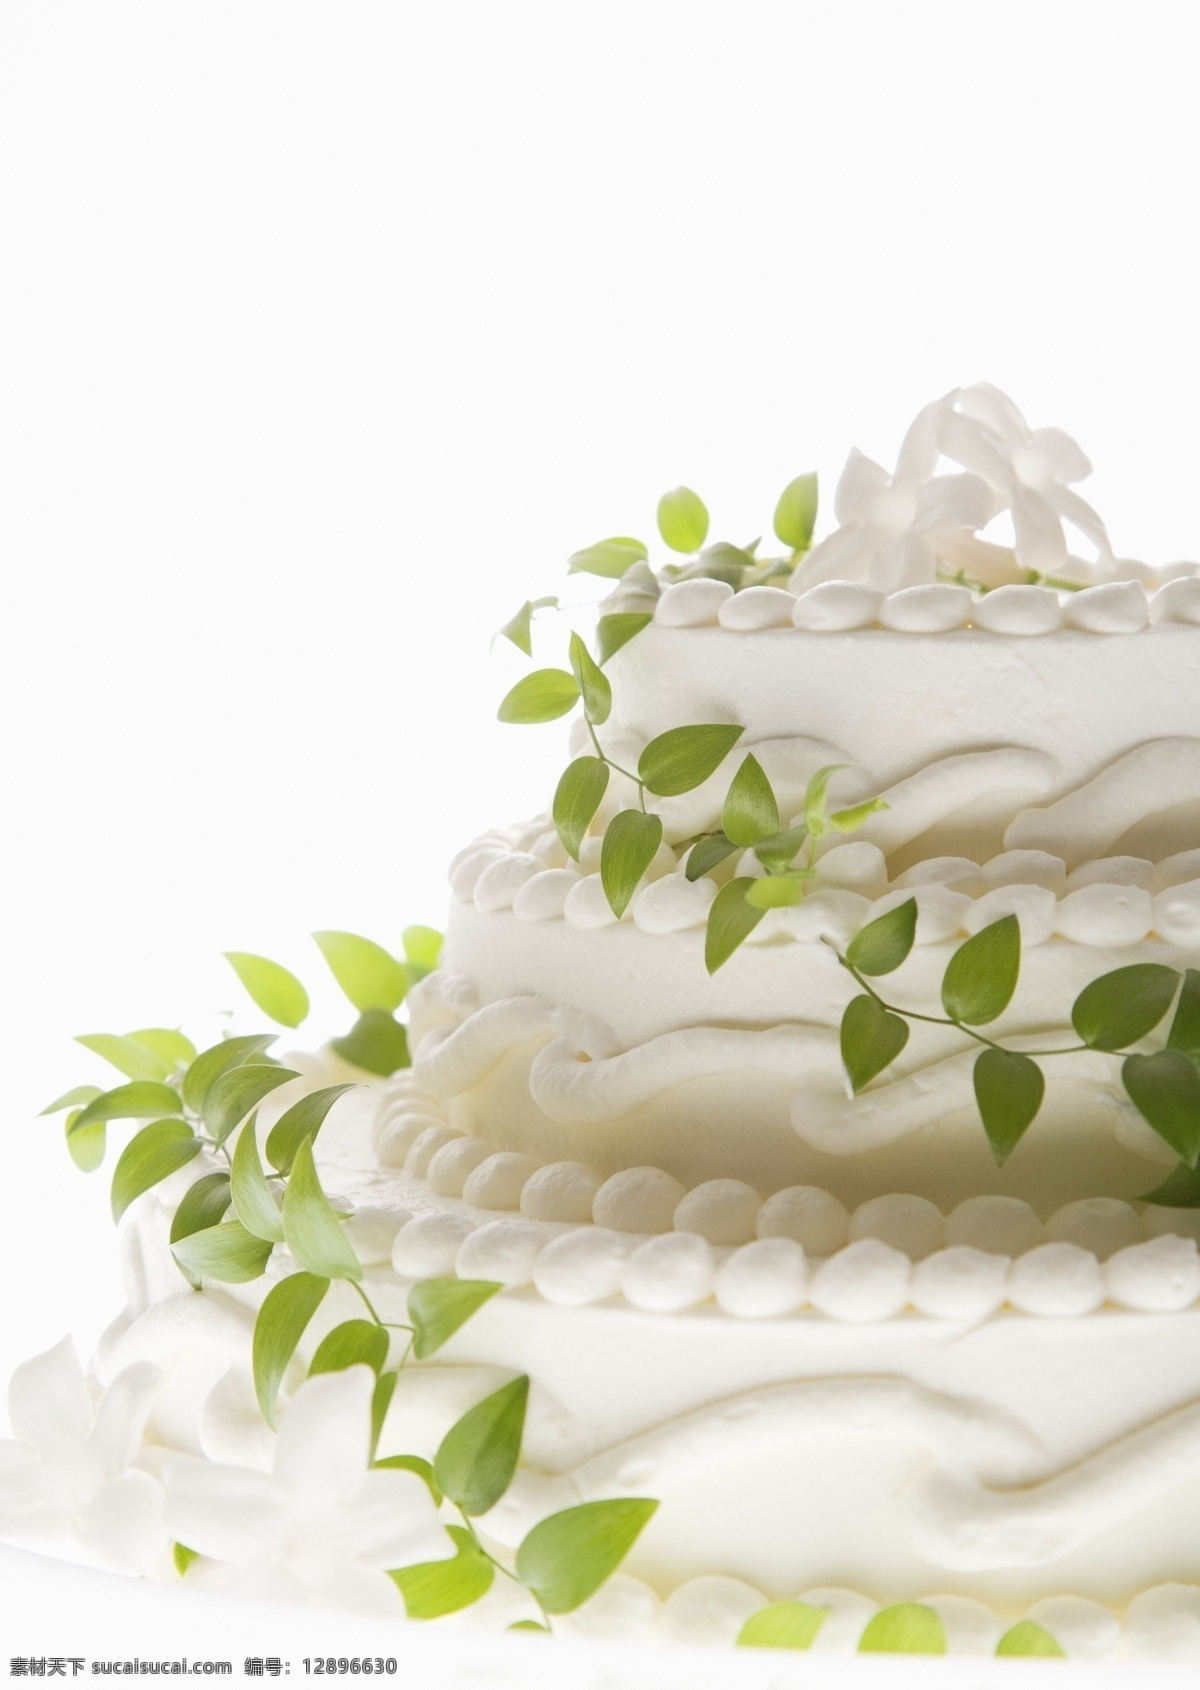 新鲜 白色 奶油 蛋糕 绿叶 白色花朵 生日 餐饮美食 西餐美食 摄影图库 生日蛋糕图片